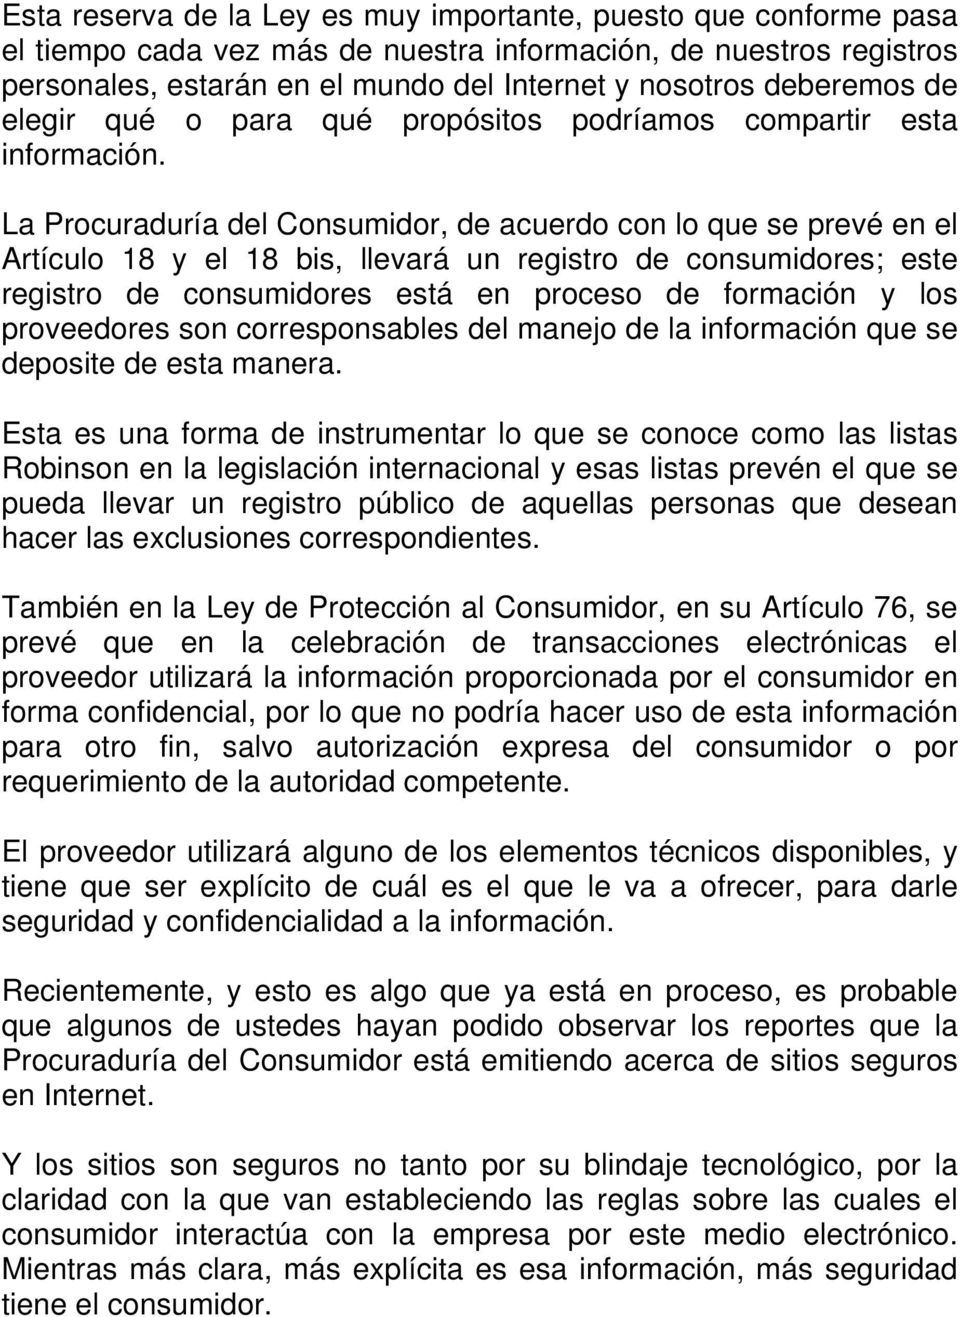 La Procuraduría del Consumidor, de acuerdo con lo que se prevé en el Artículo 18 y el 18 bis, llevará un registro de consumidores; este registro de consumidores está en proceso de formación y los